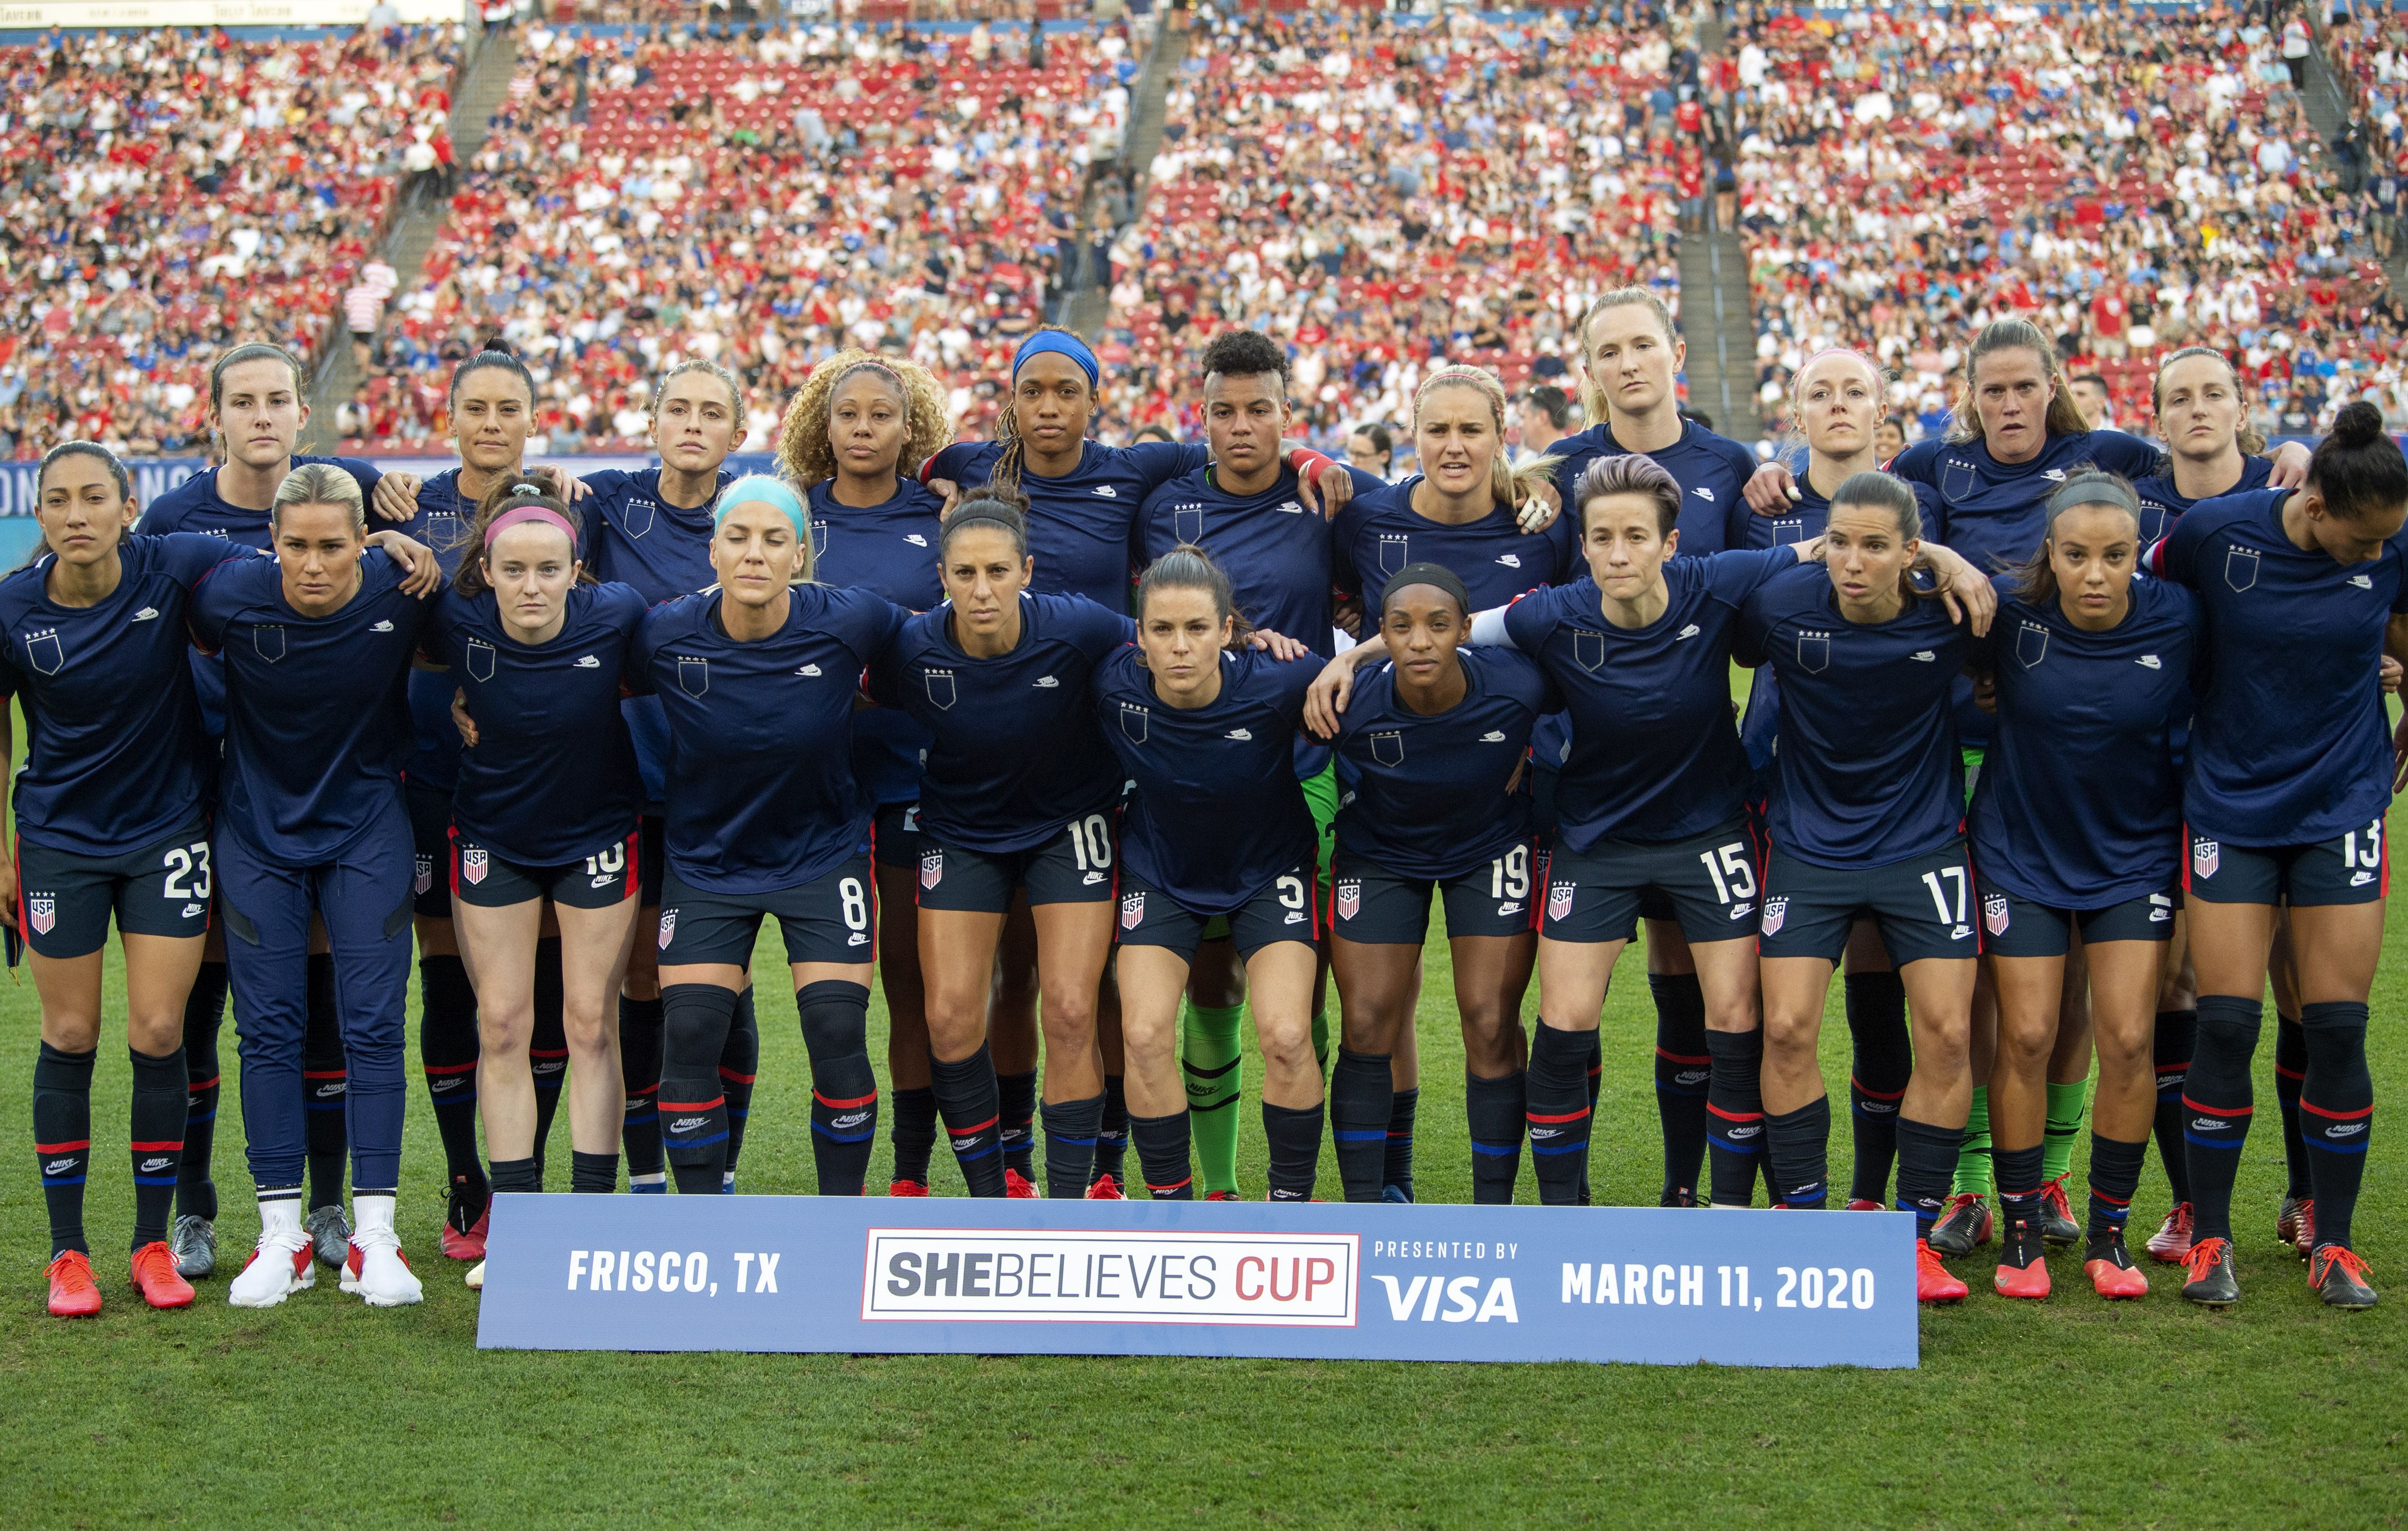 U.S. Women's Soccer Team Wears Warm Up Jerseys Inside Out